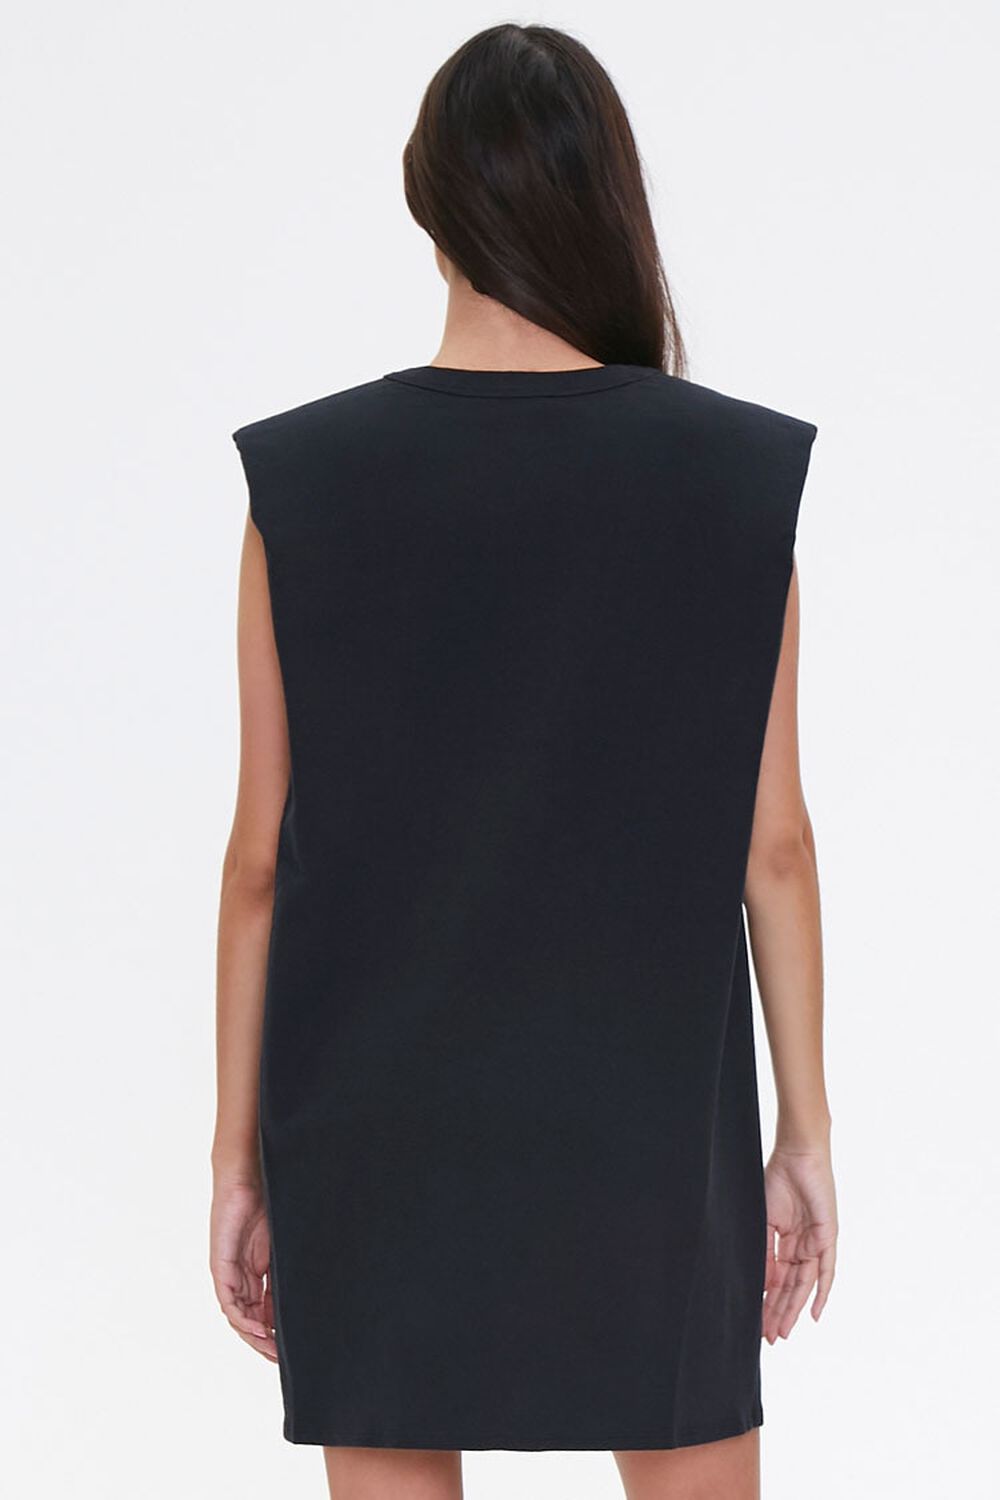 BLACK T-Shirt Shoulder Pad Dress, image 3